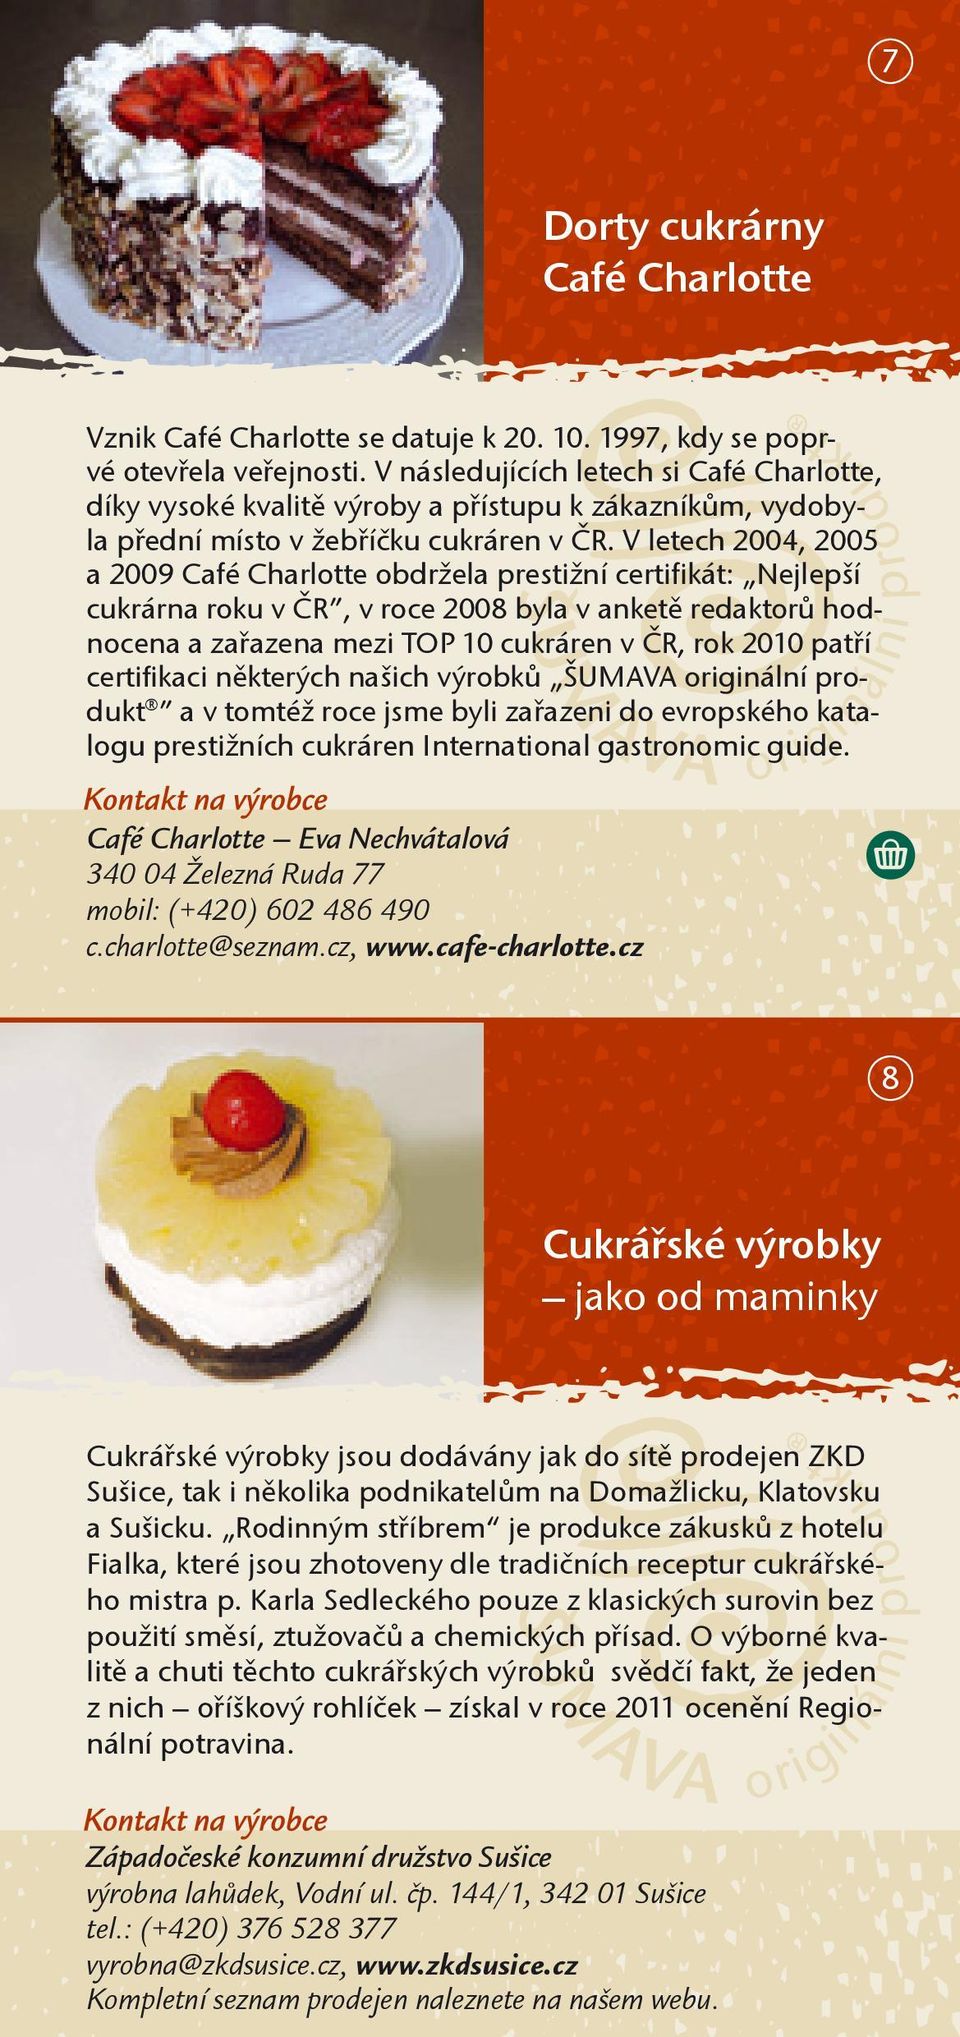 V letech 2004, 2005 a 2009 Café Charlotte obdržela prestižní certifikát: Nejlepší cukrárna roku v ČR, v roce 2008 byla v anketě redaktorů hodnocena a zařazena mezi TOP 10 cukráren v ČR, rok 2010